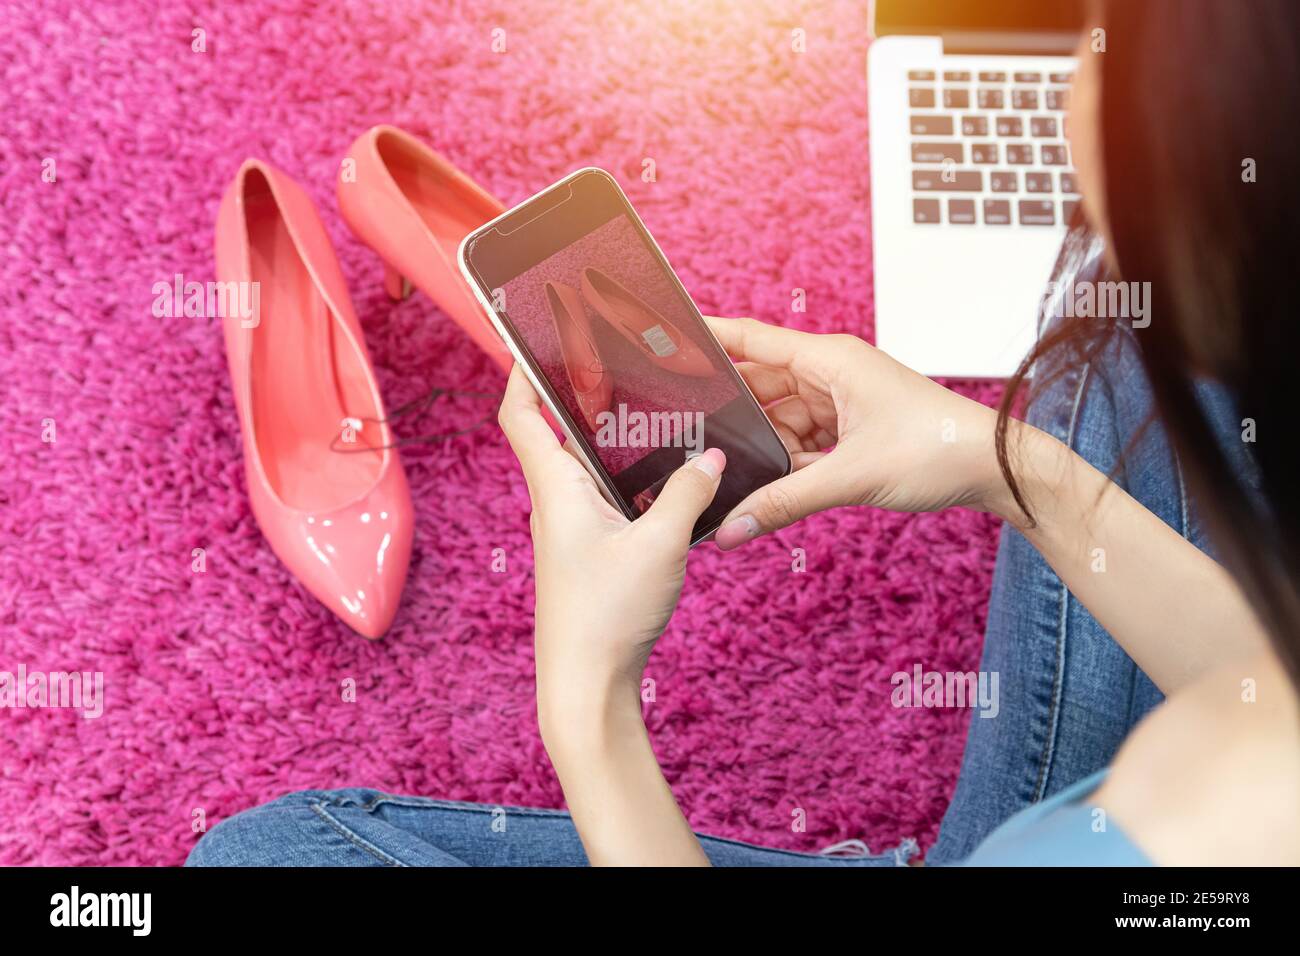 vente en ligne idée concept. vendeur en ligne utiliser téléphone mobile prendre une photo de chaussures à talons hauts pour télécharger sur le site web de magasin d'achats en ligne. Banque D'Images